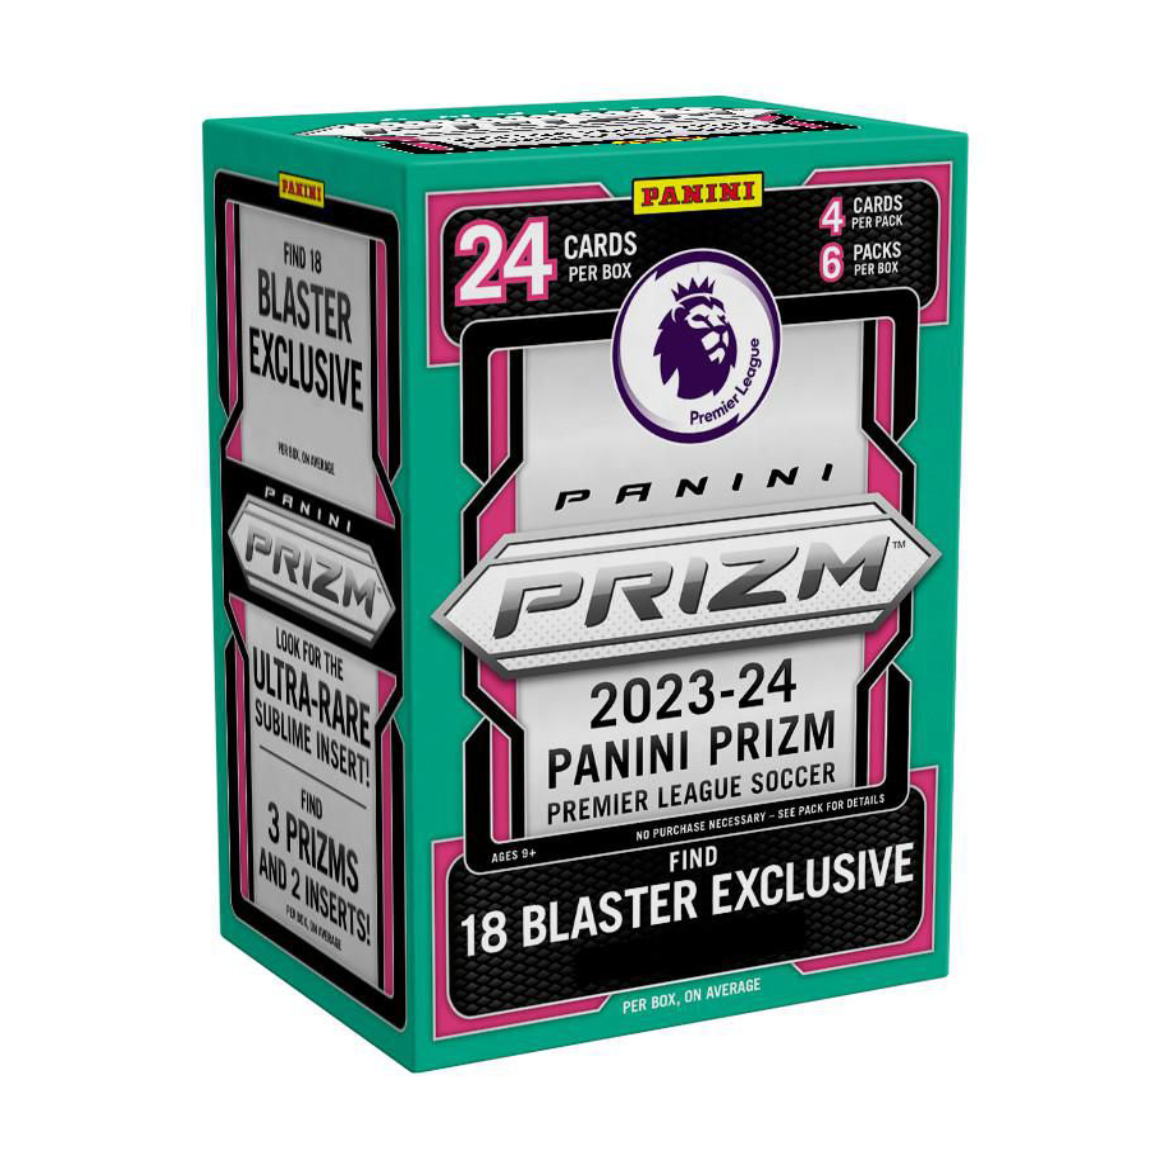 2023-24 Panini Prizm Premier League Soccer Blaster